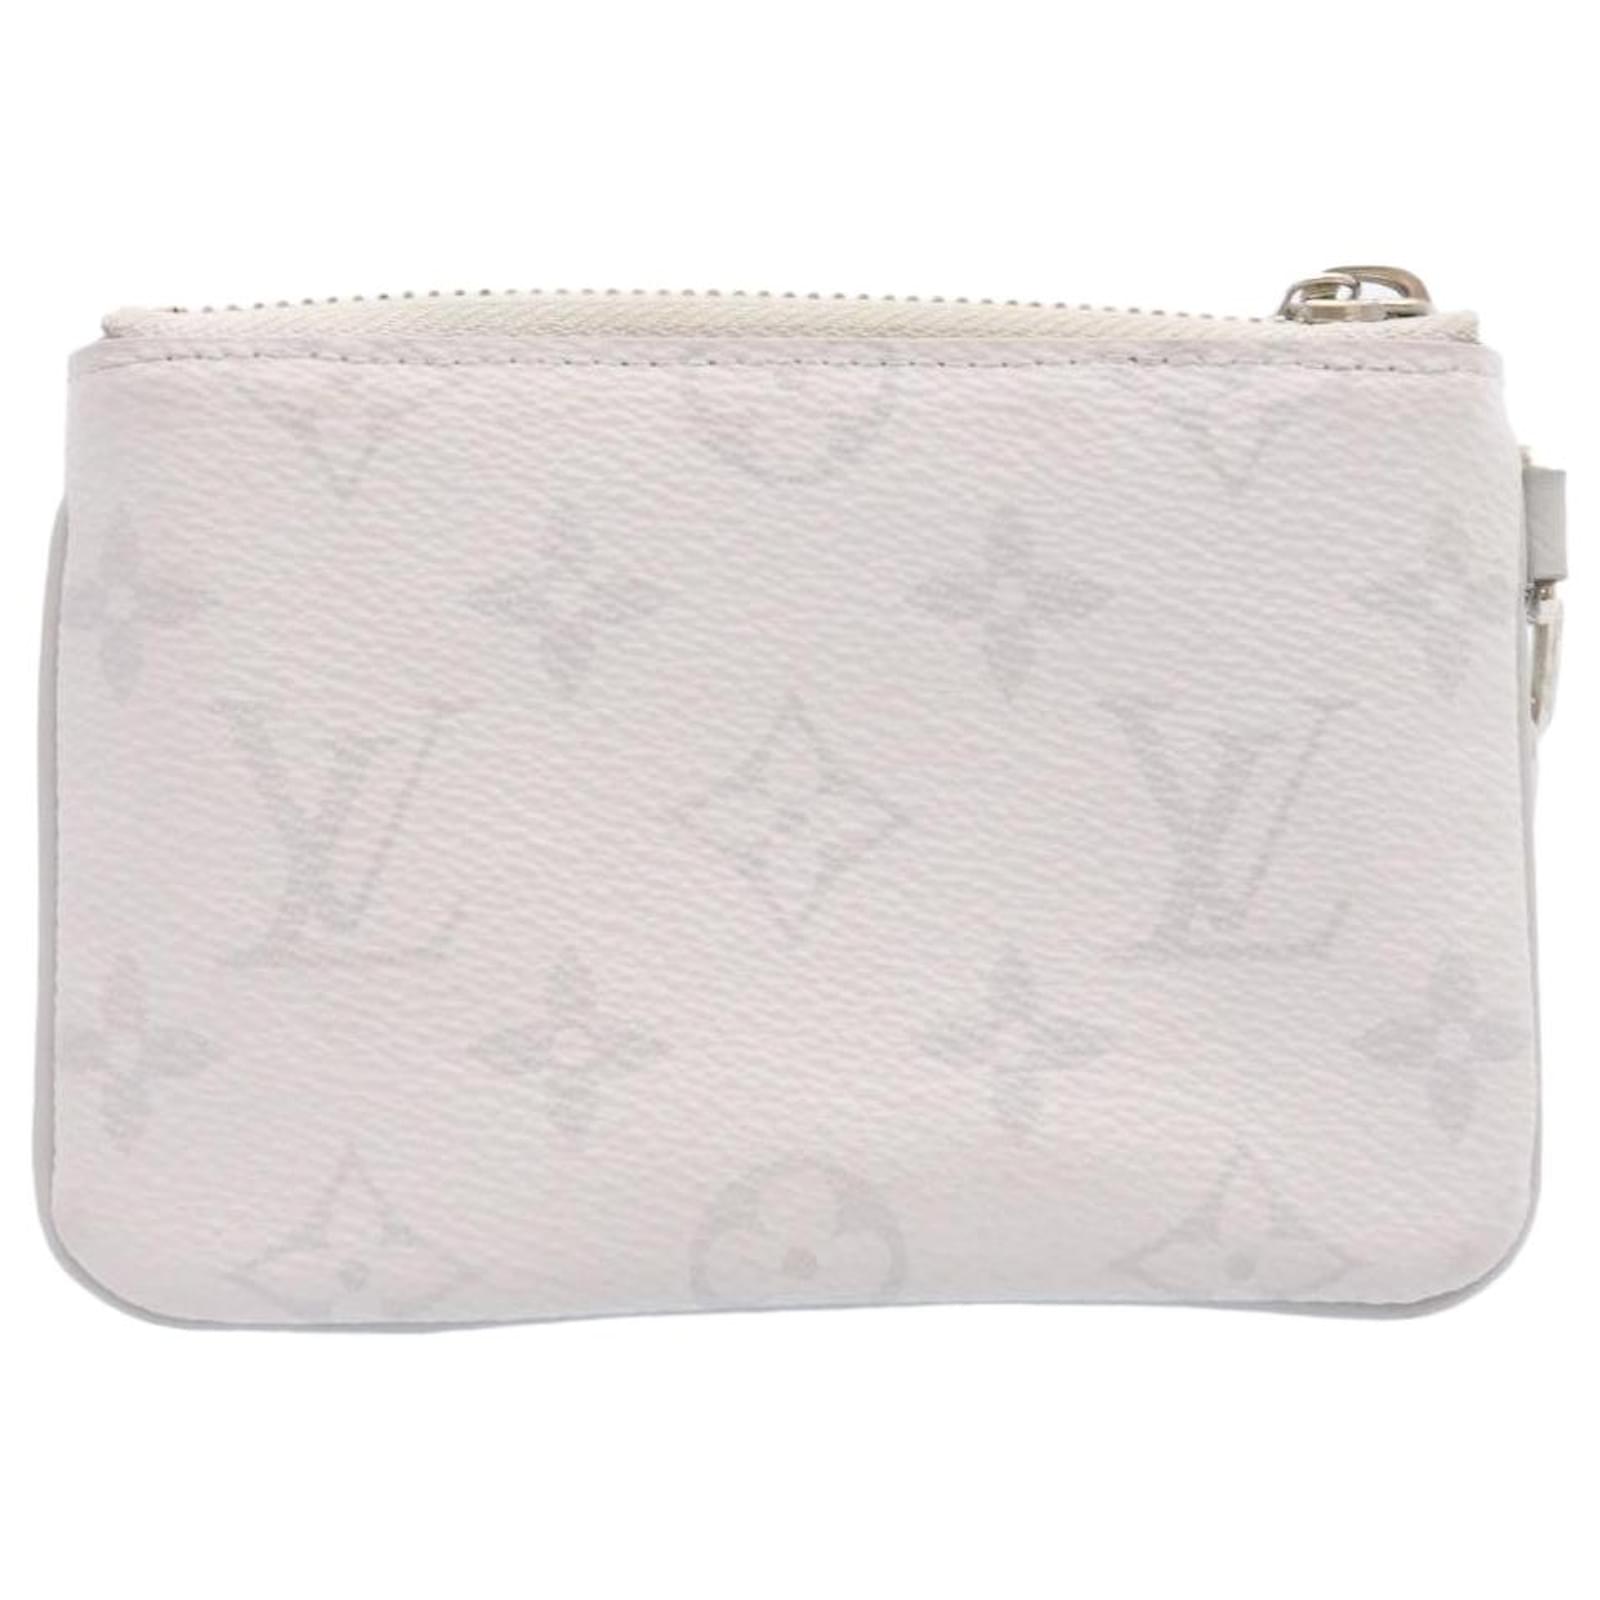 Louis Vuitton Monogram Zipped Pouch PM M67809 White Logo Brand